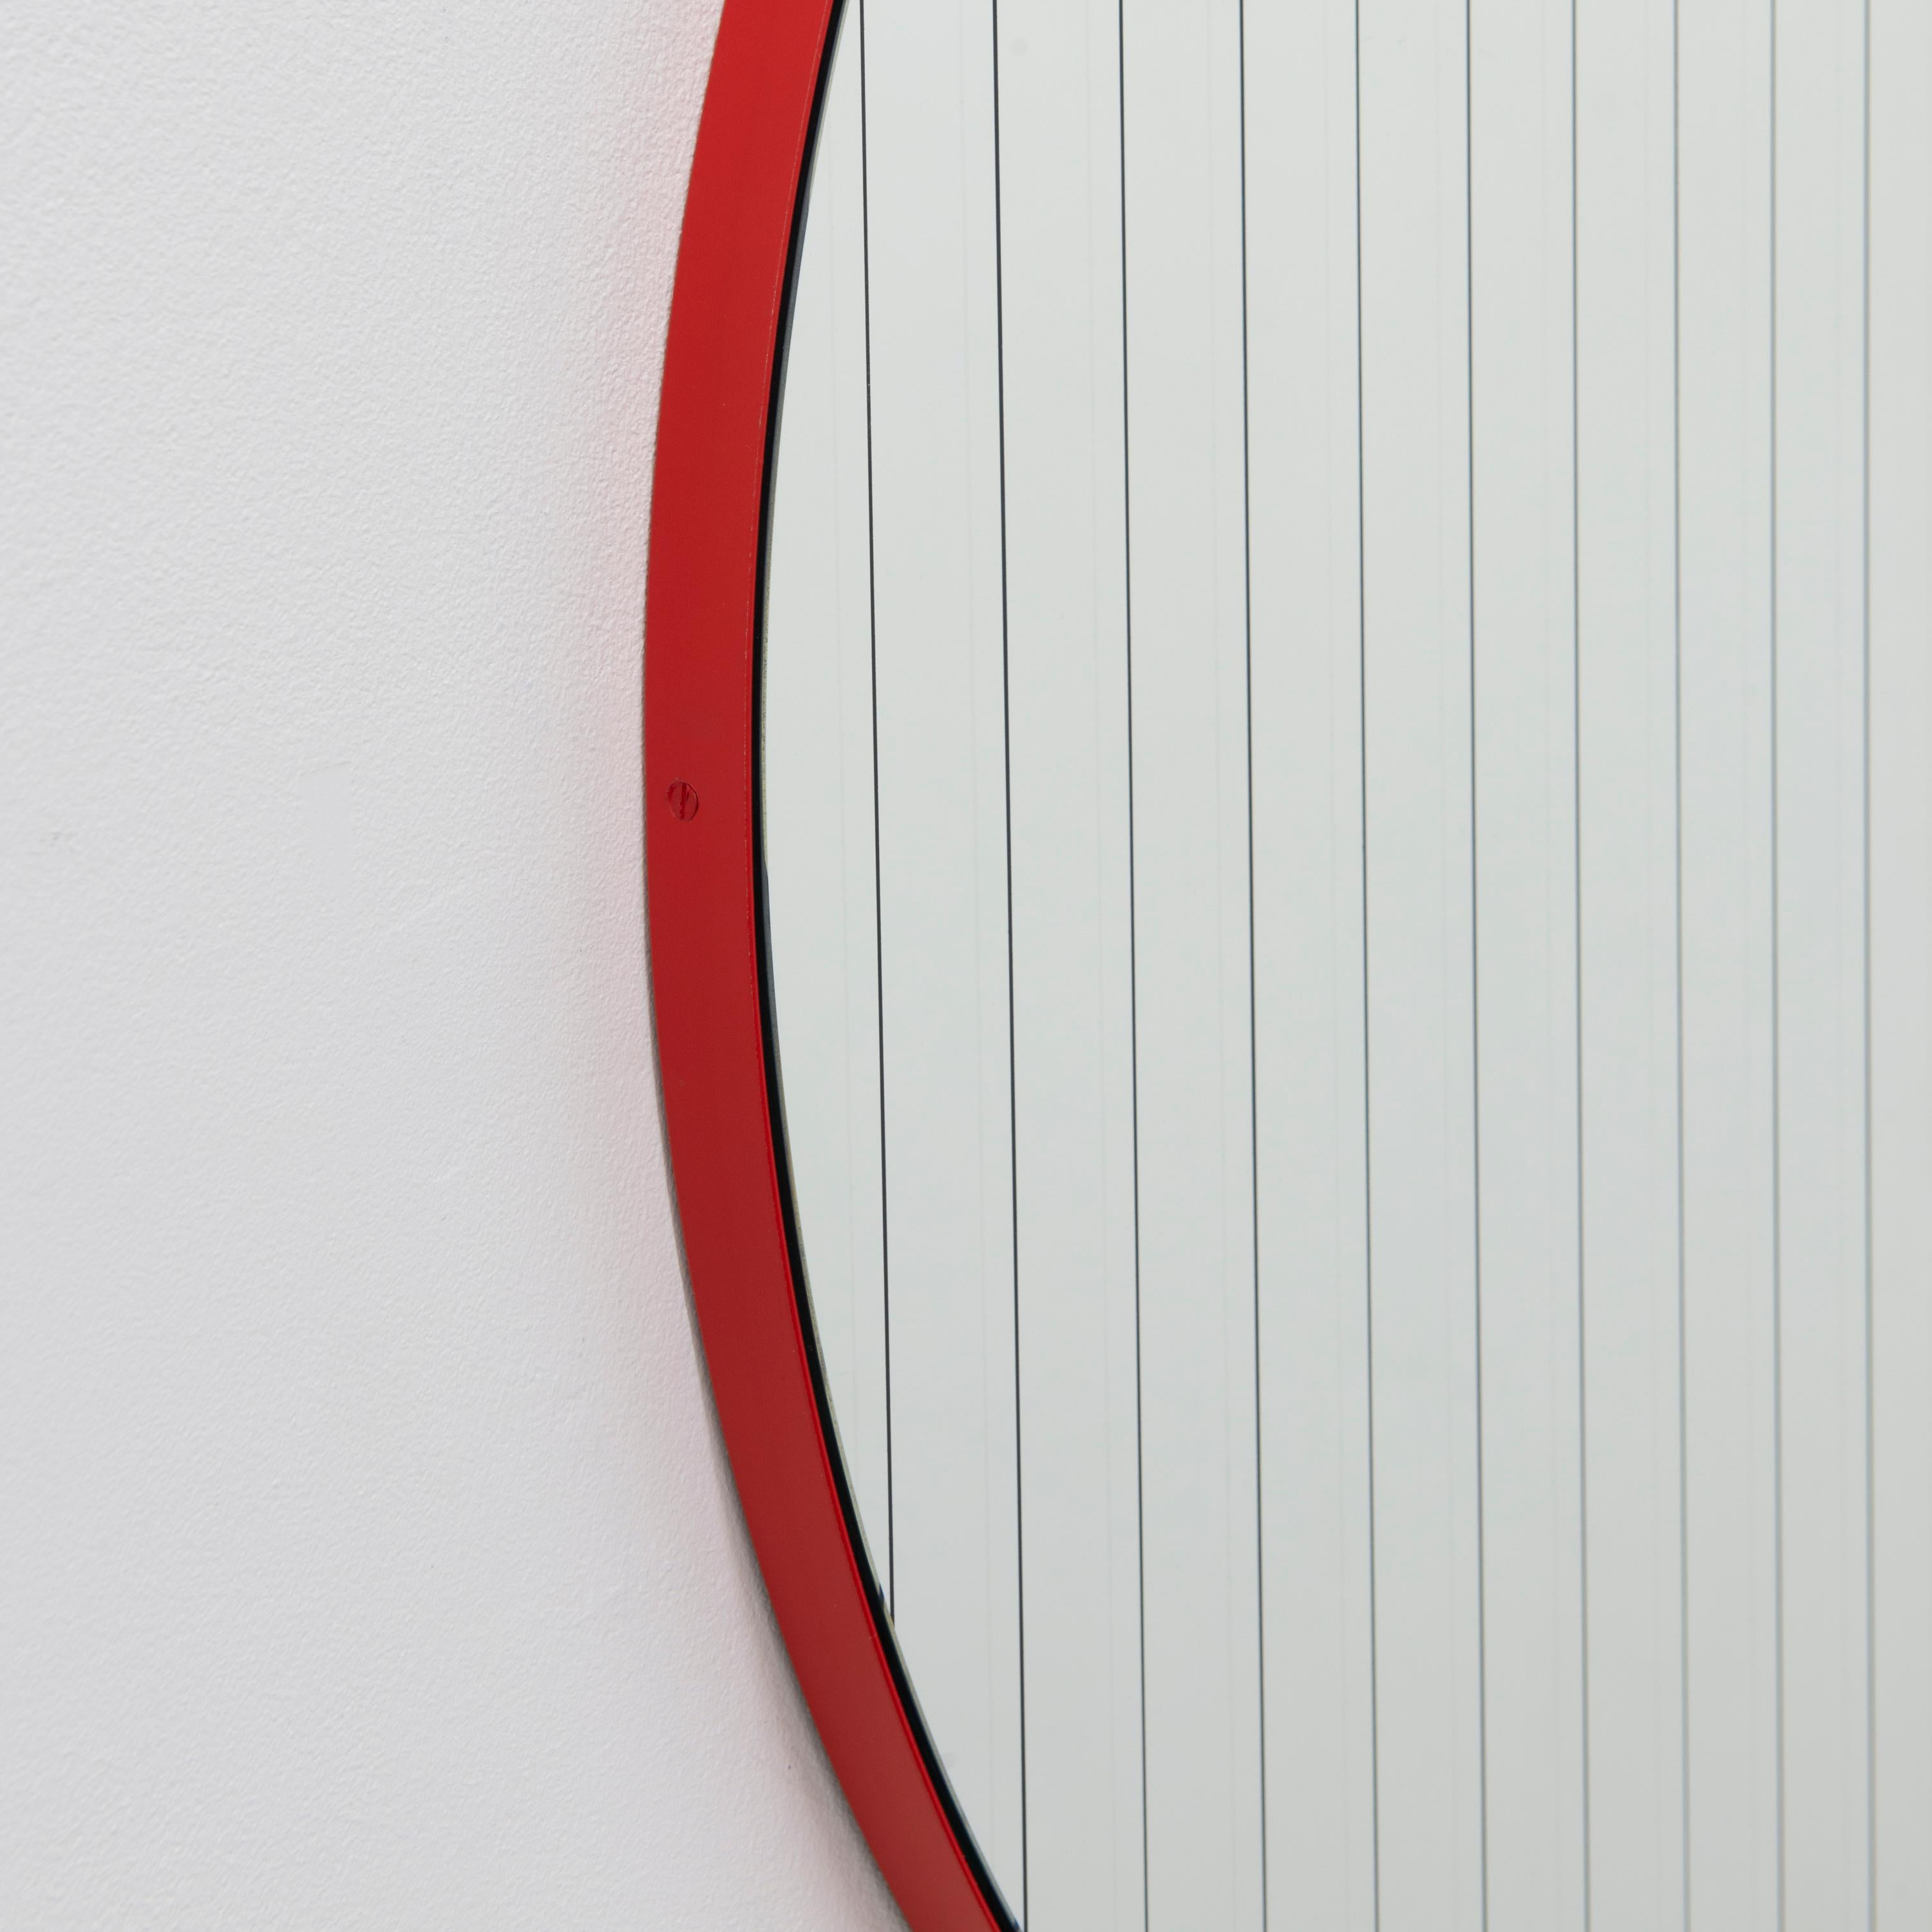 British Orbis Linus Round Modern Mirror with Sandblasted Strips and Red Frame, Medium